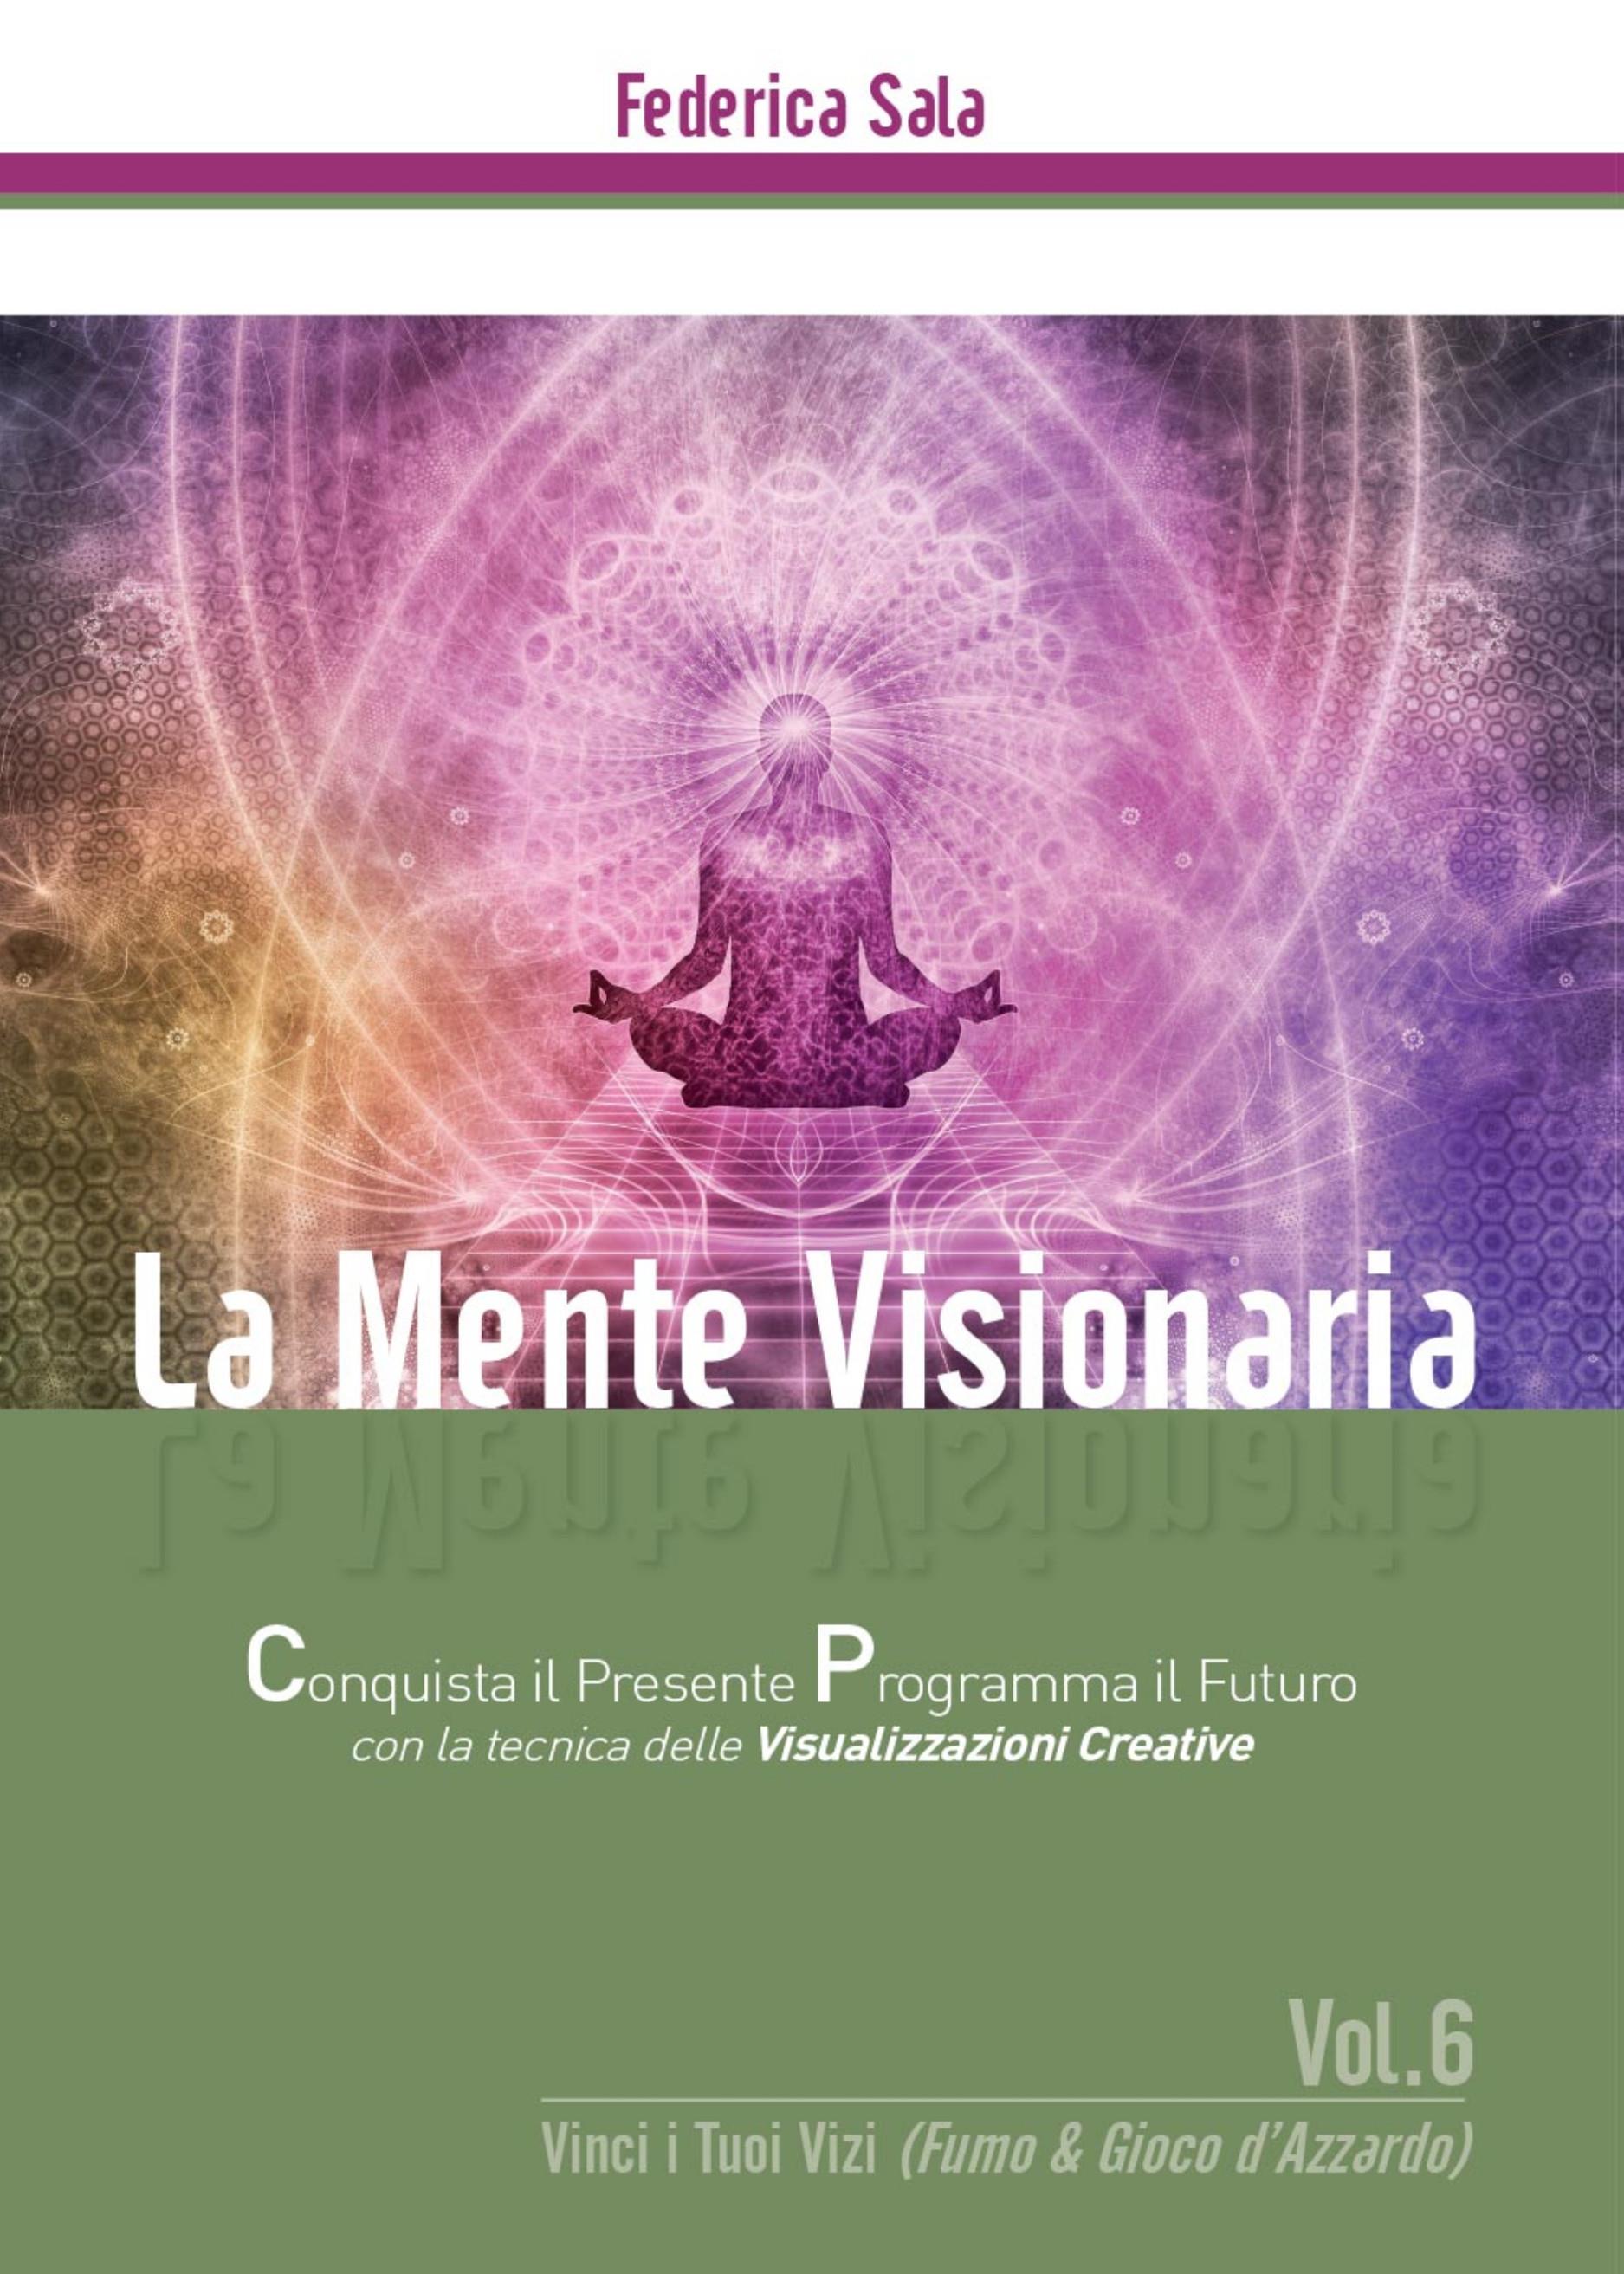 La Mente Visionaria Vol.6 Vinci i Tuoi vizi (Fumo & Gioco d'azzardo)